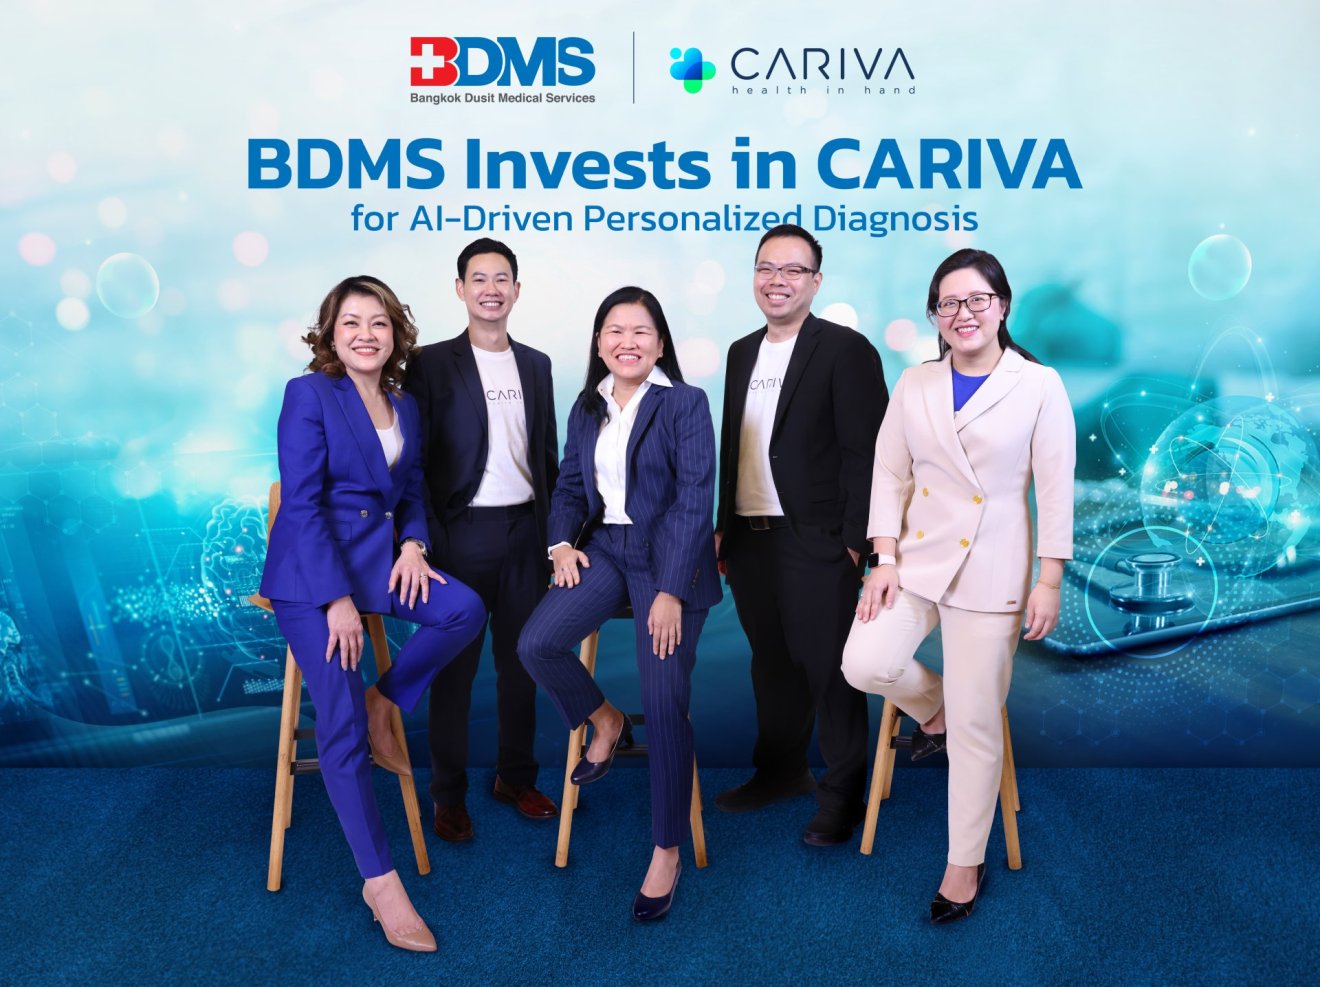 BDMS ลงทุนใน Cariva สร้างสรรค์ AI ทางการแพทย์รายแรกในอาเซียน พา Healthcare ไทยก้าวไปอีกขั้น